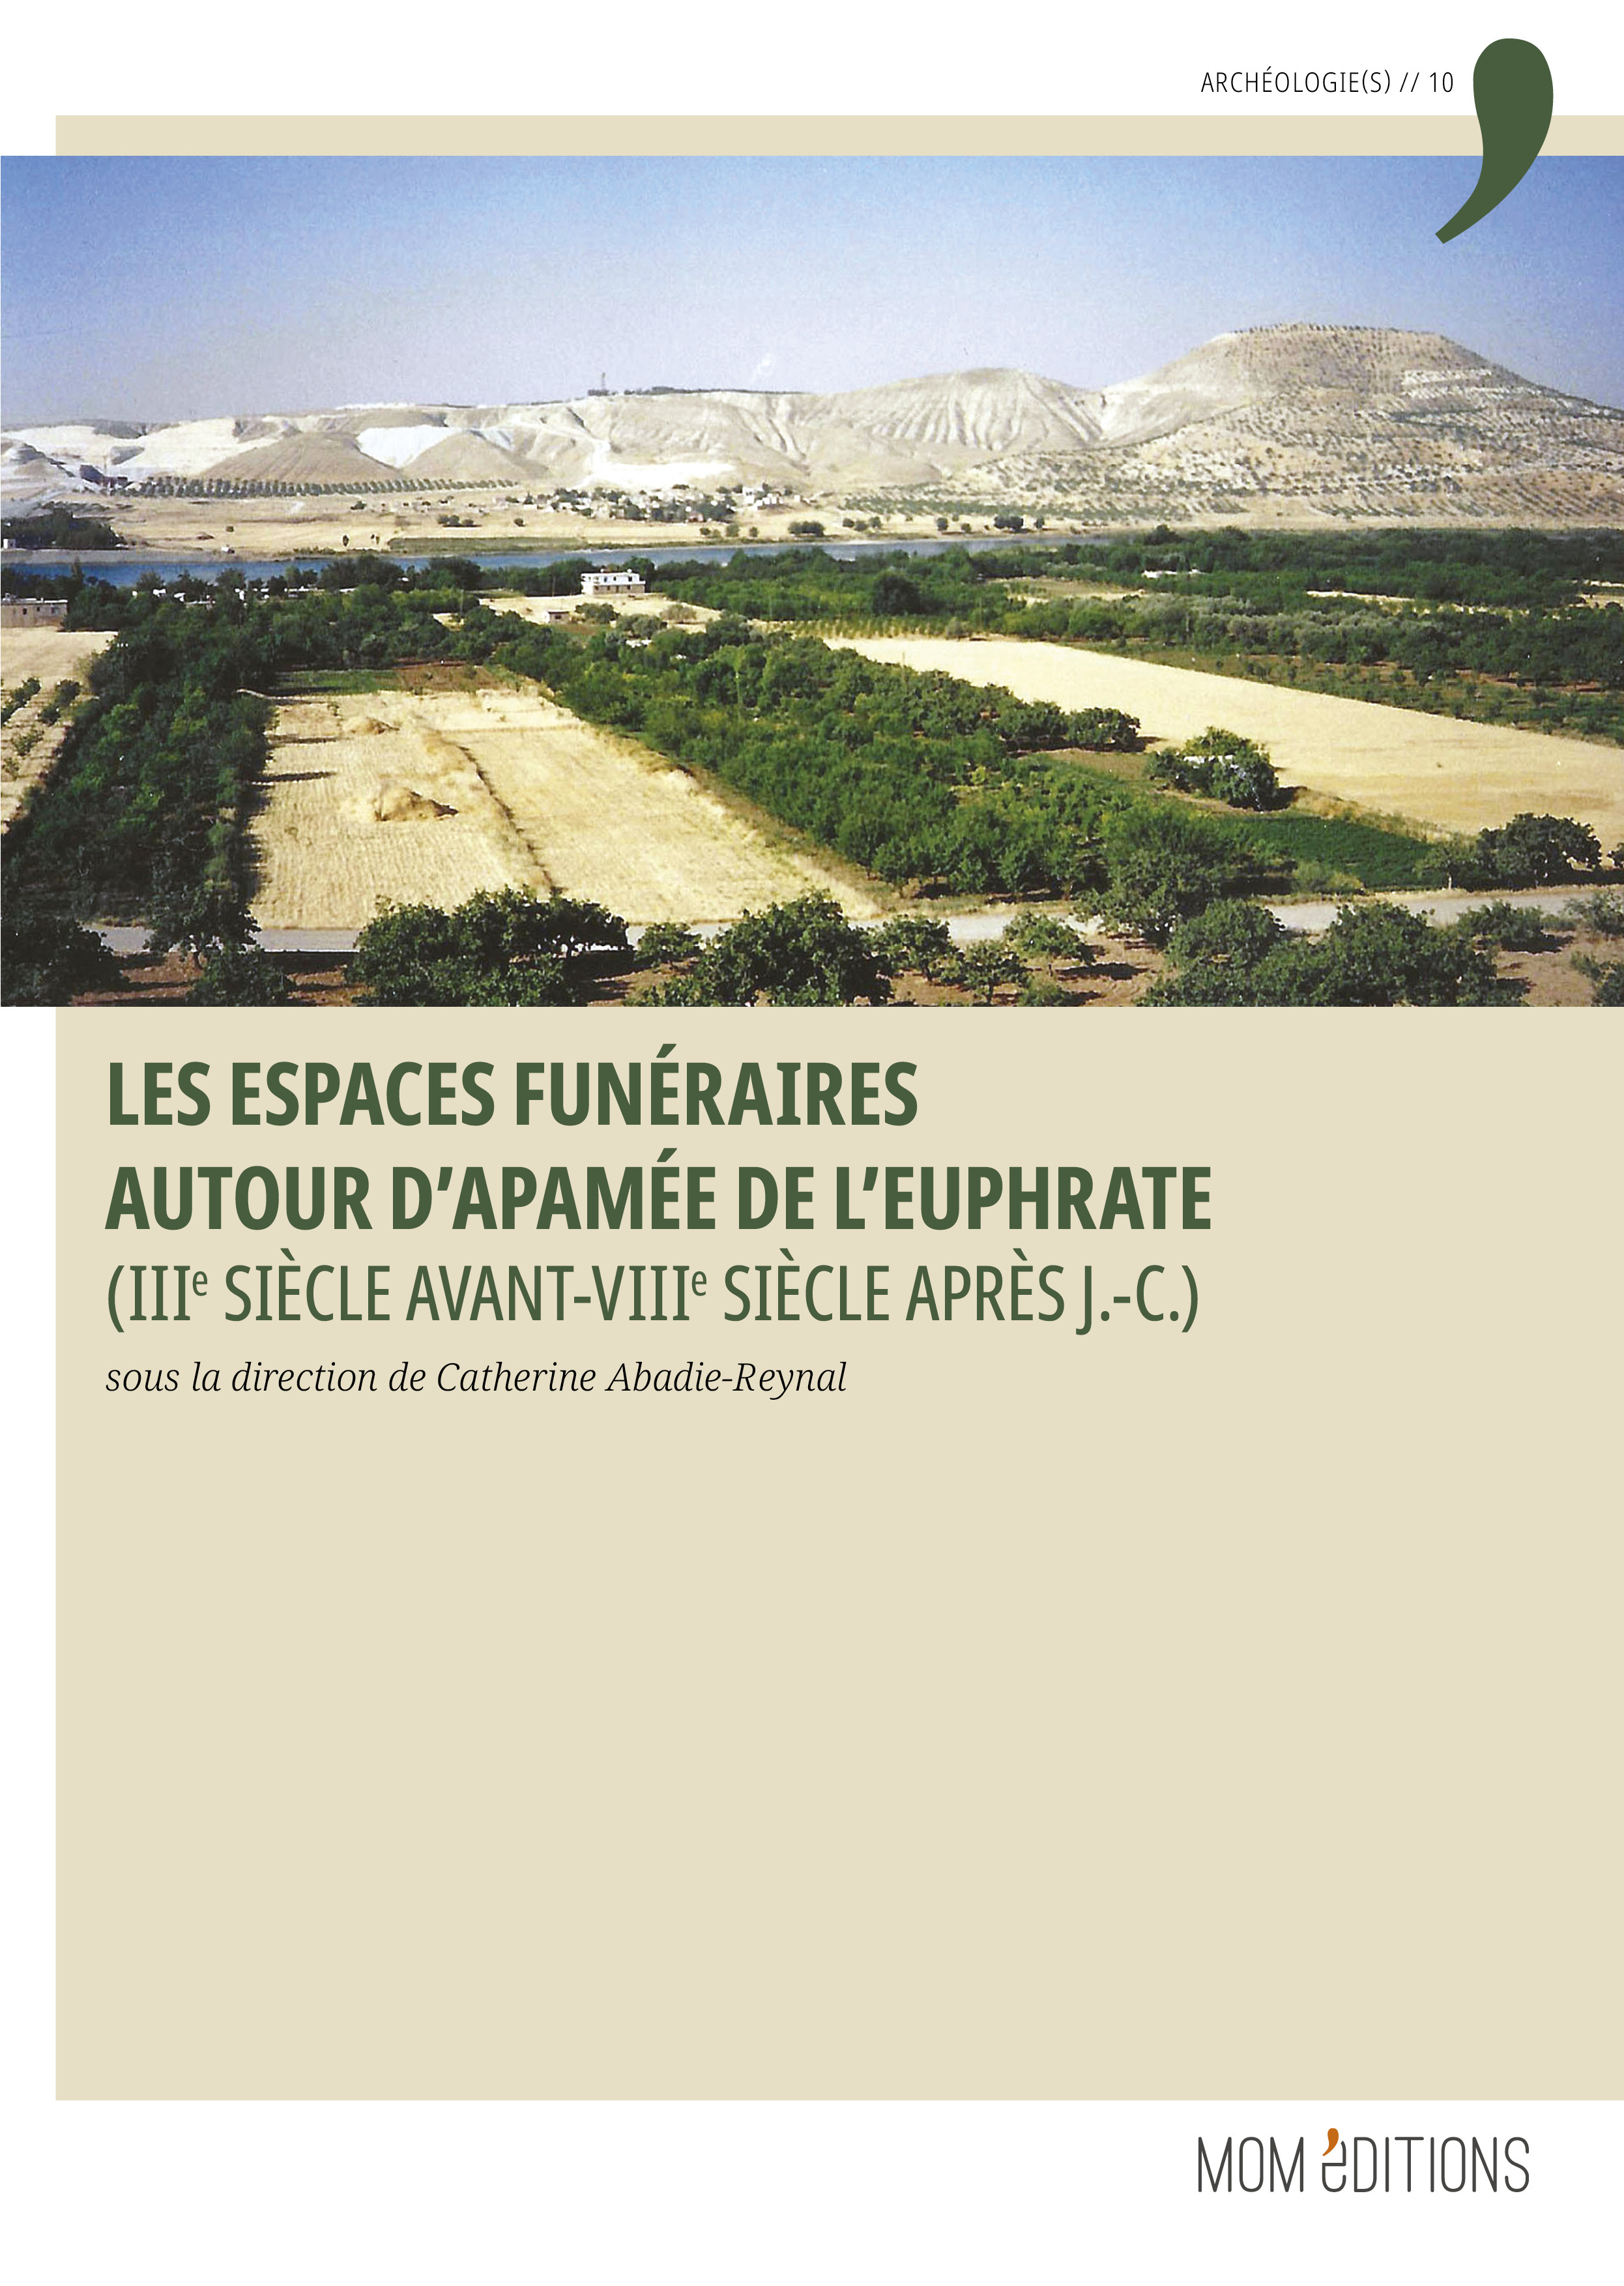 Les espaces funéraires autour d'Apamée de l'Euphrate (IIIe siècle avant-VIIIe siècle après J.-C.), 2023, 580 p.